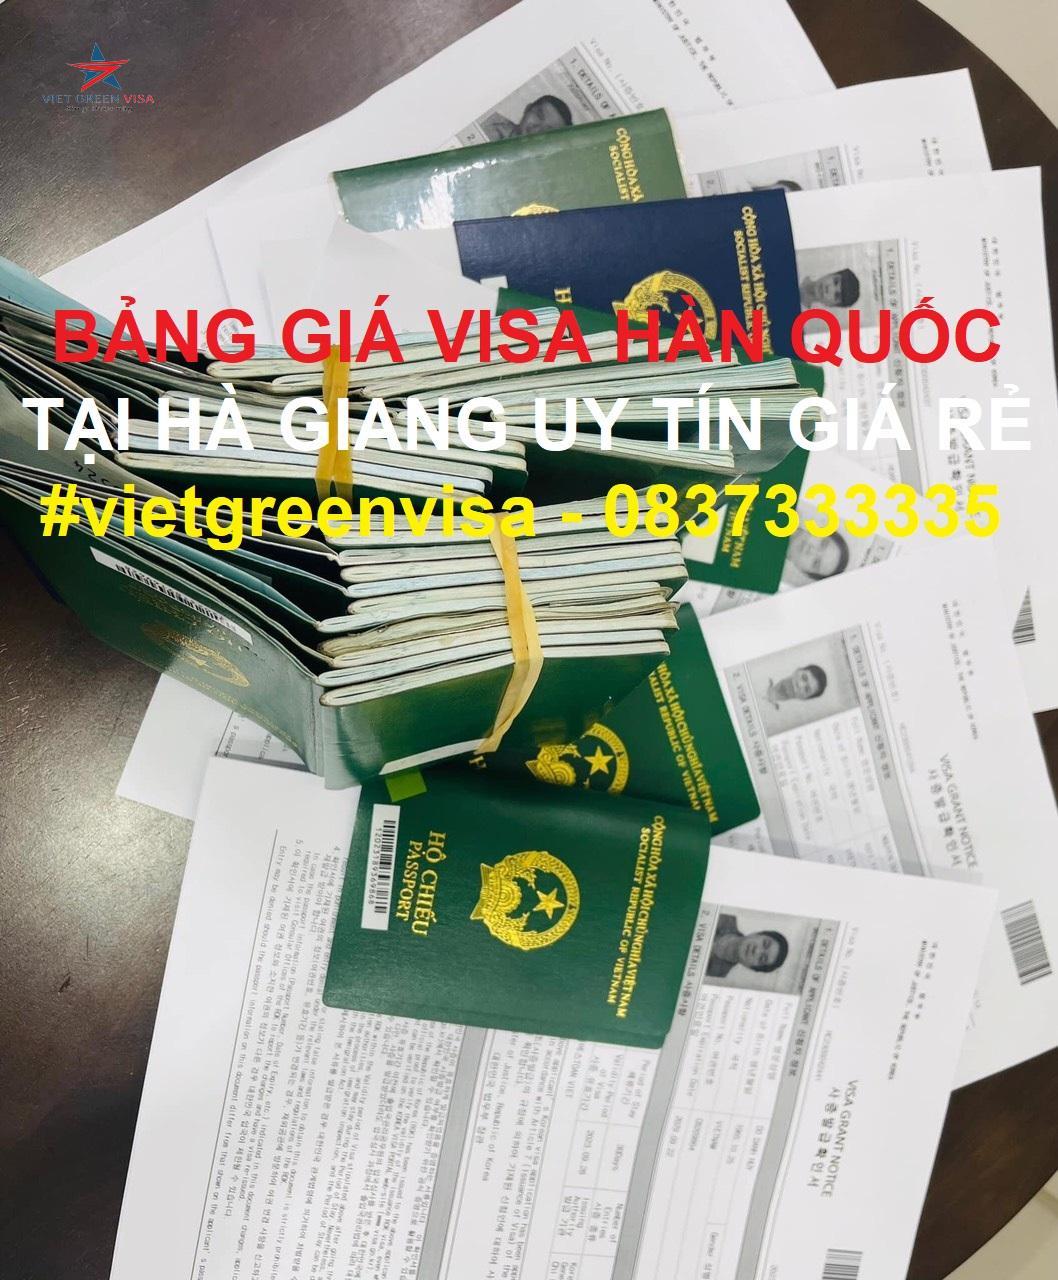 Dịch vụ xin visa Hàn Quốc tại Hà Giang uy tín nhanh chóng